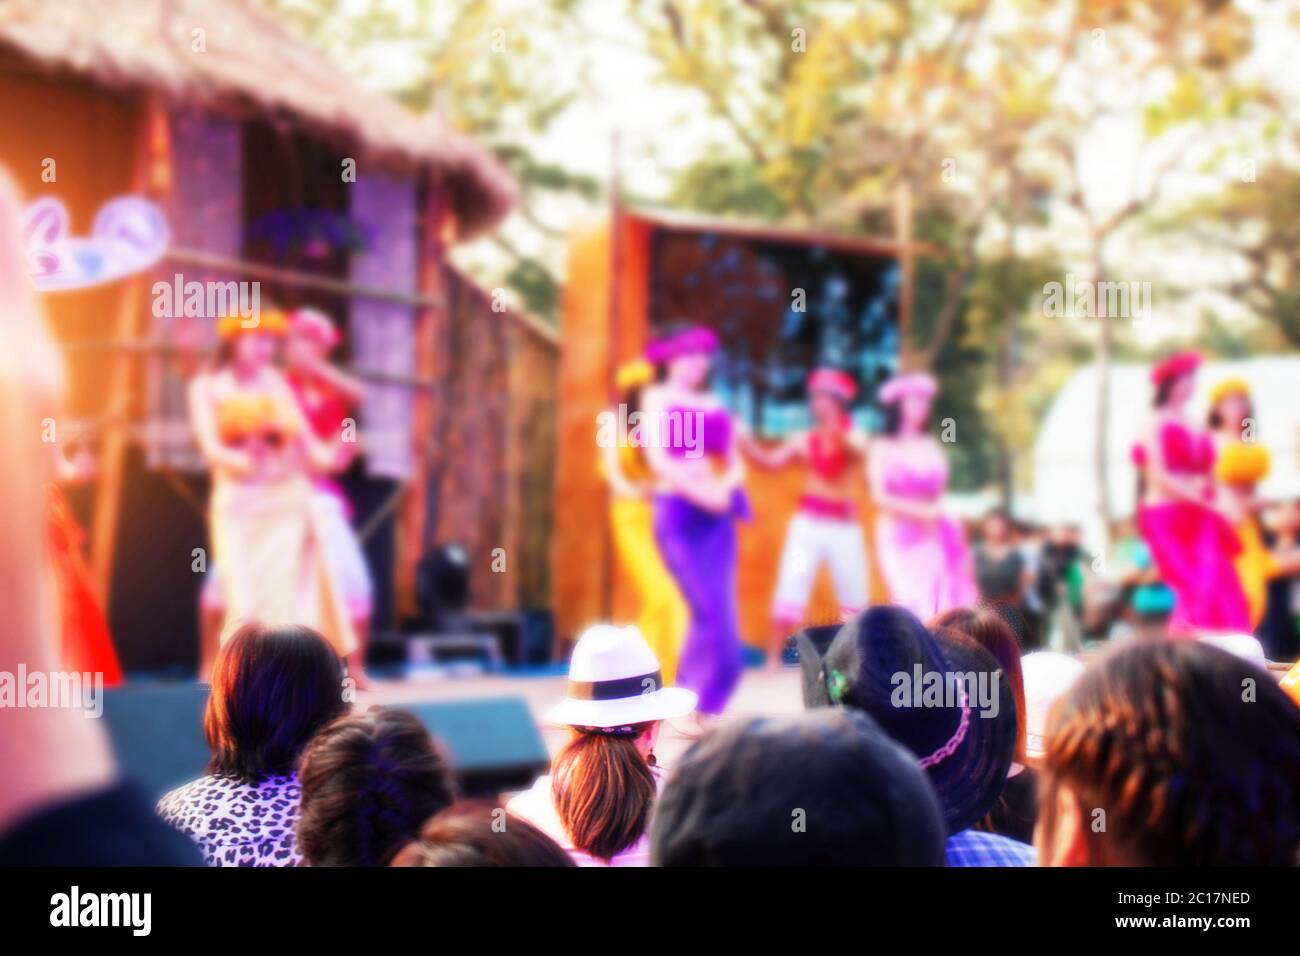 Islander-Tanzshow auf der Bühne. Stockfoto